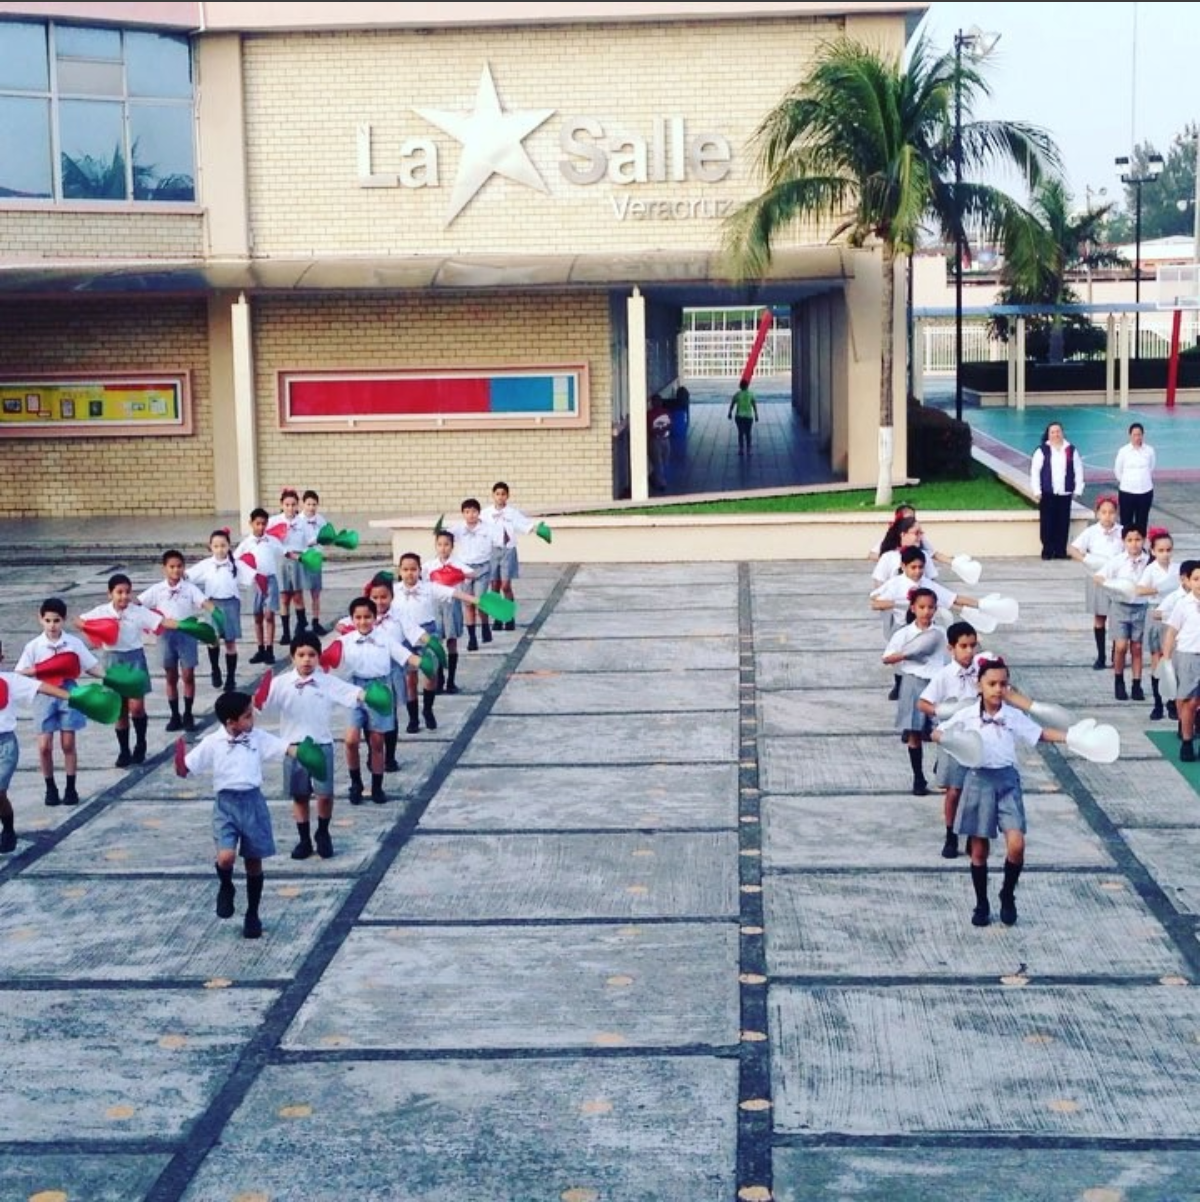 instagram actividades La Salle Veracruz